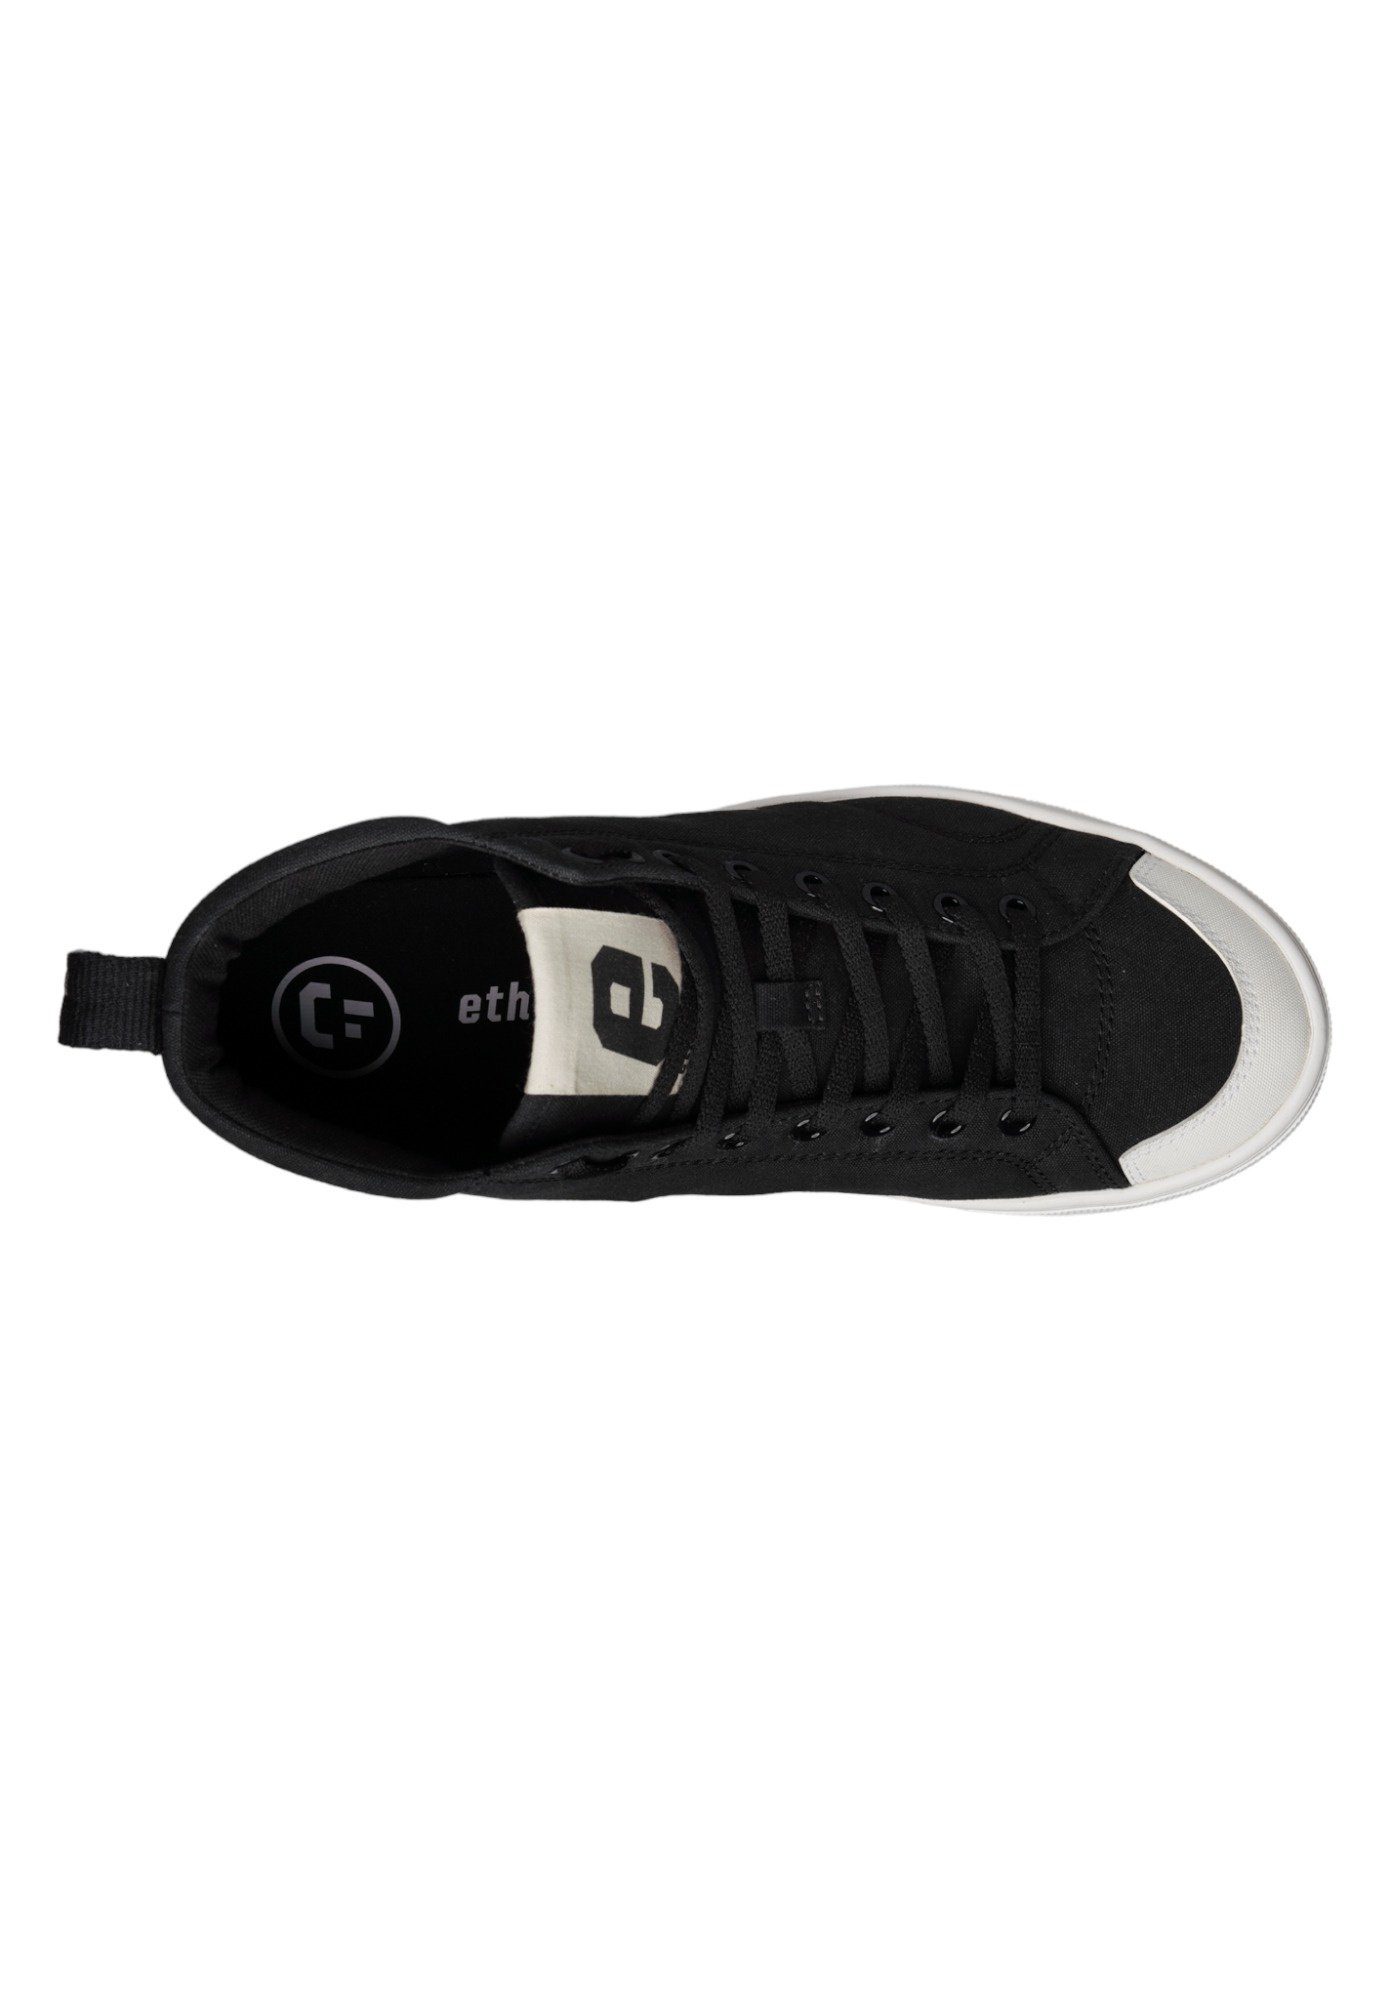 ETHLETIC Cut Jet Black Jet Fairtrade Sneaker - Produkt Black Hi Active